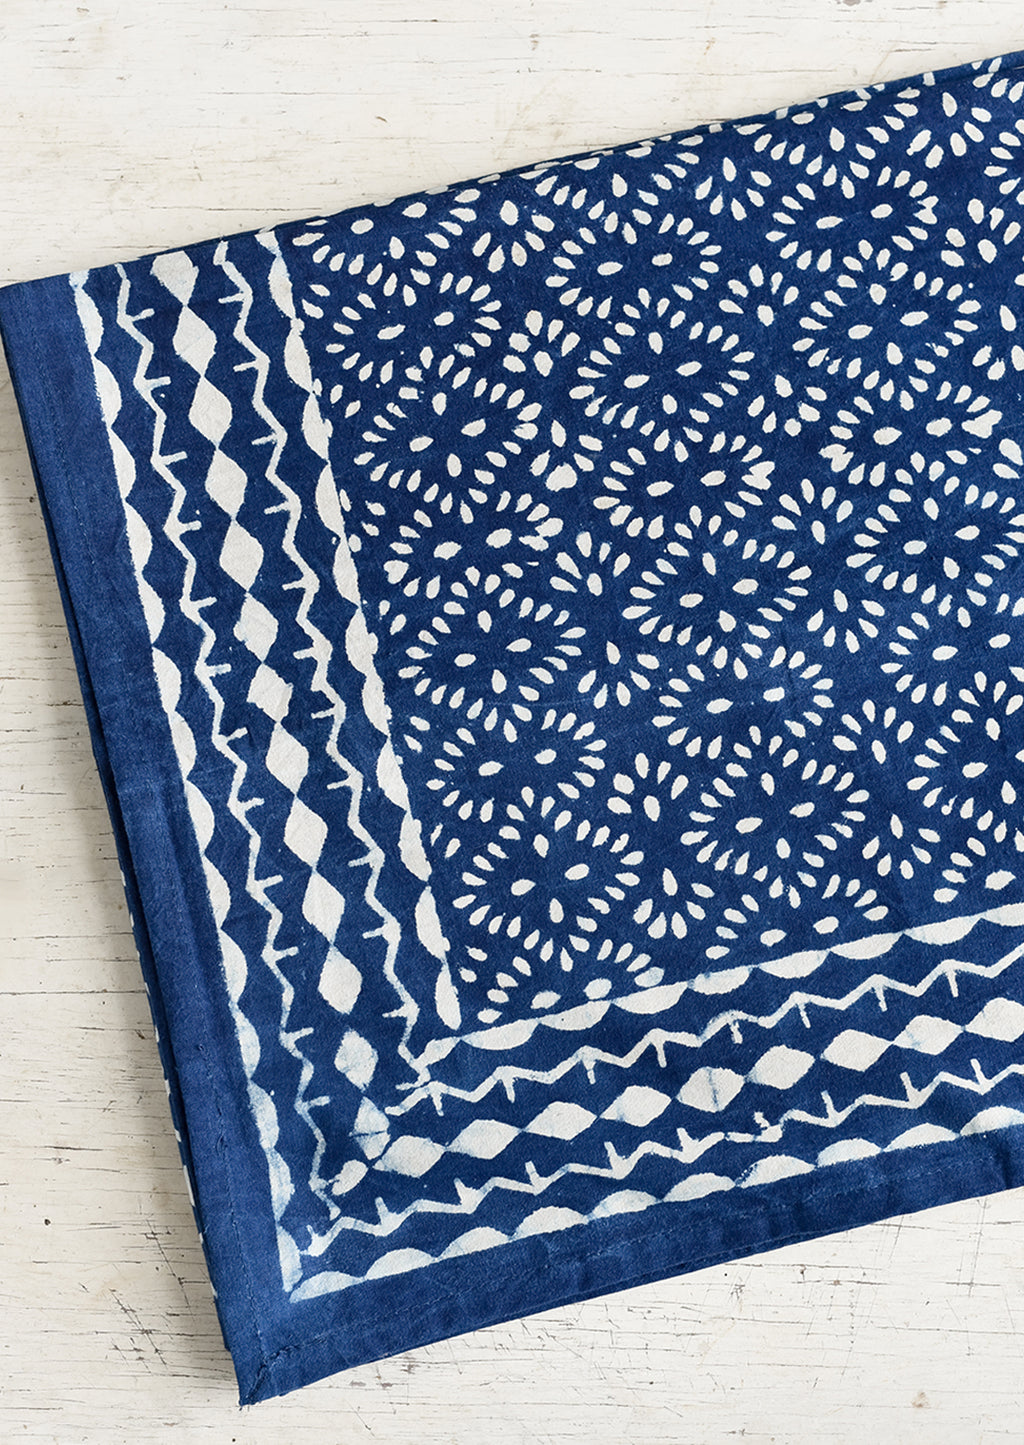 1: An indigo block printed tablecloth.